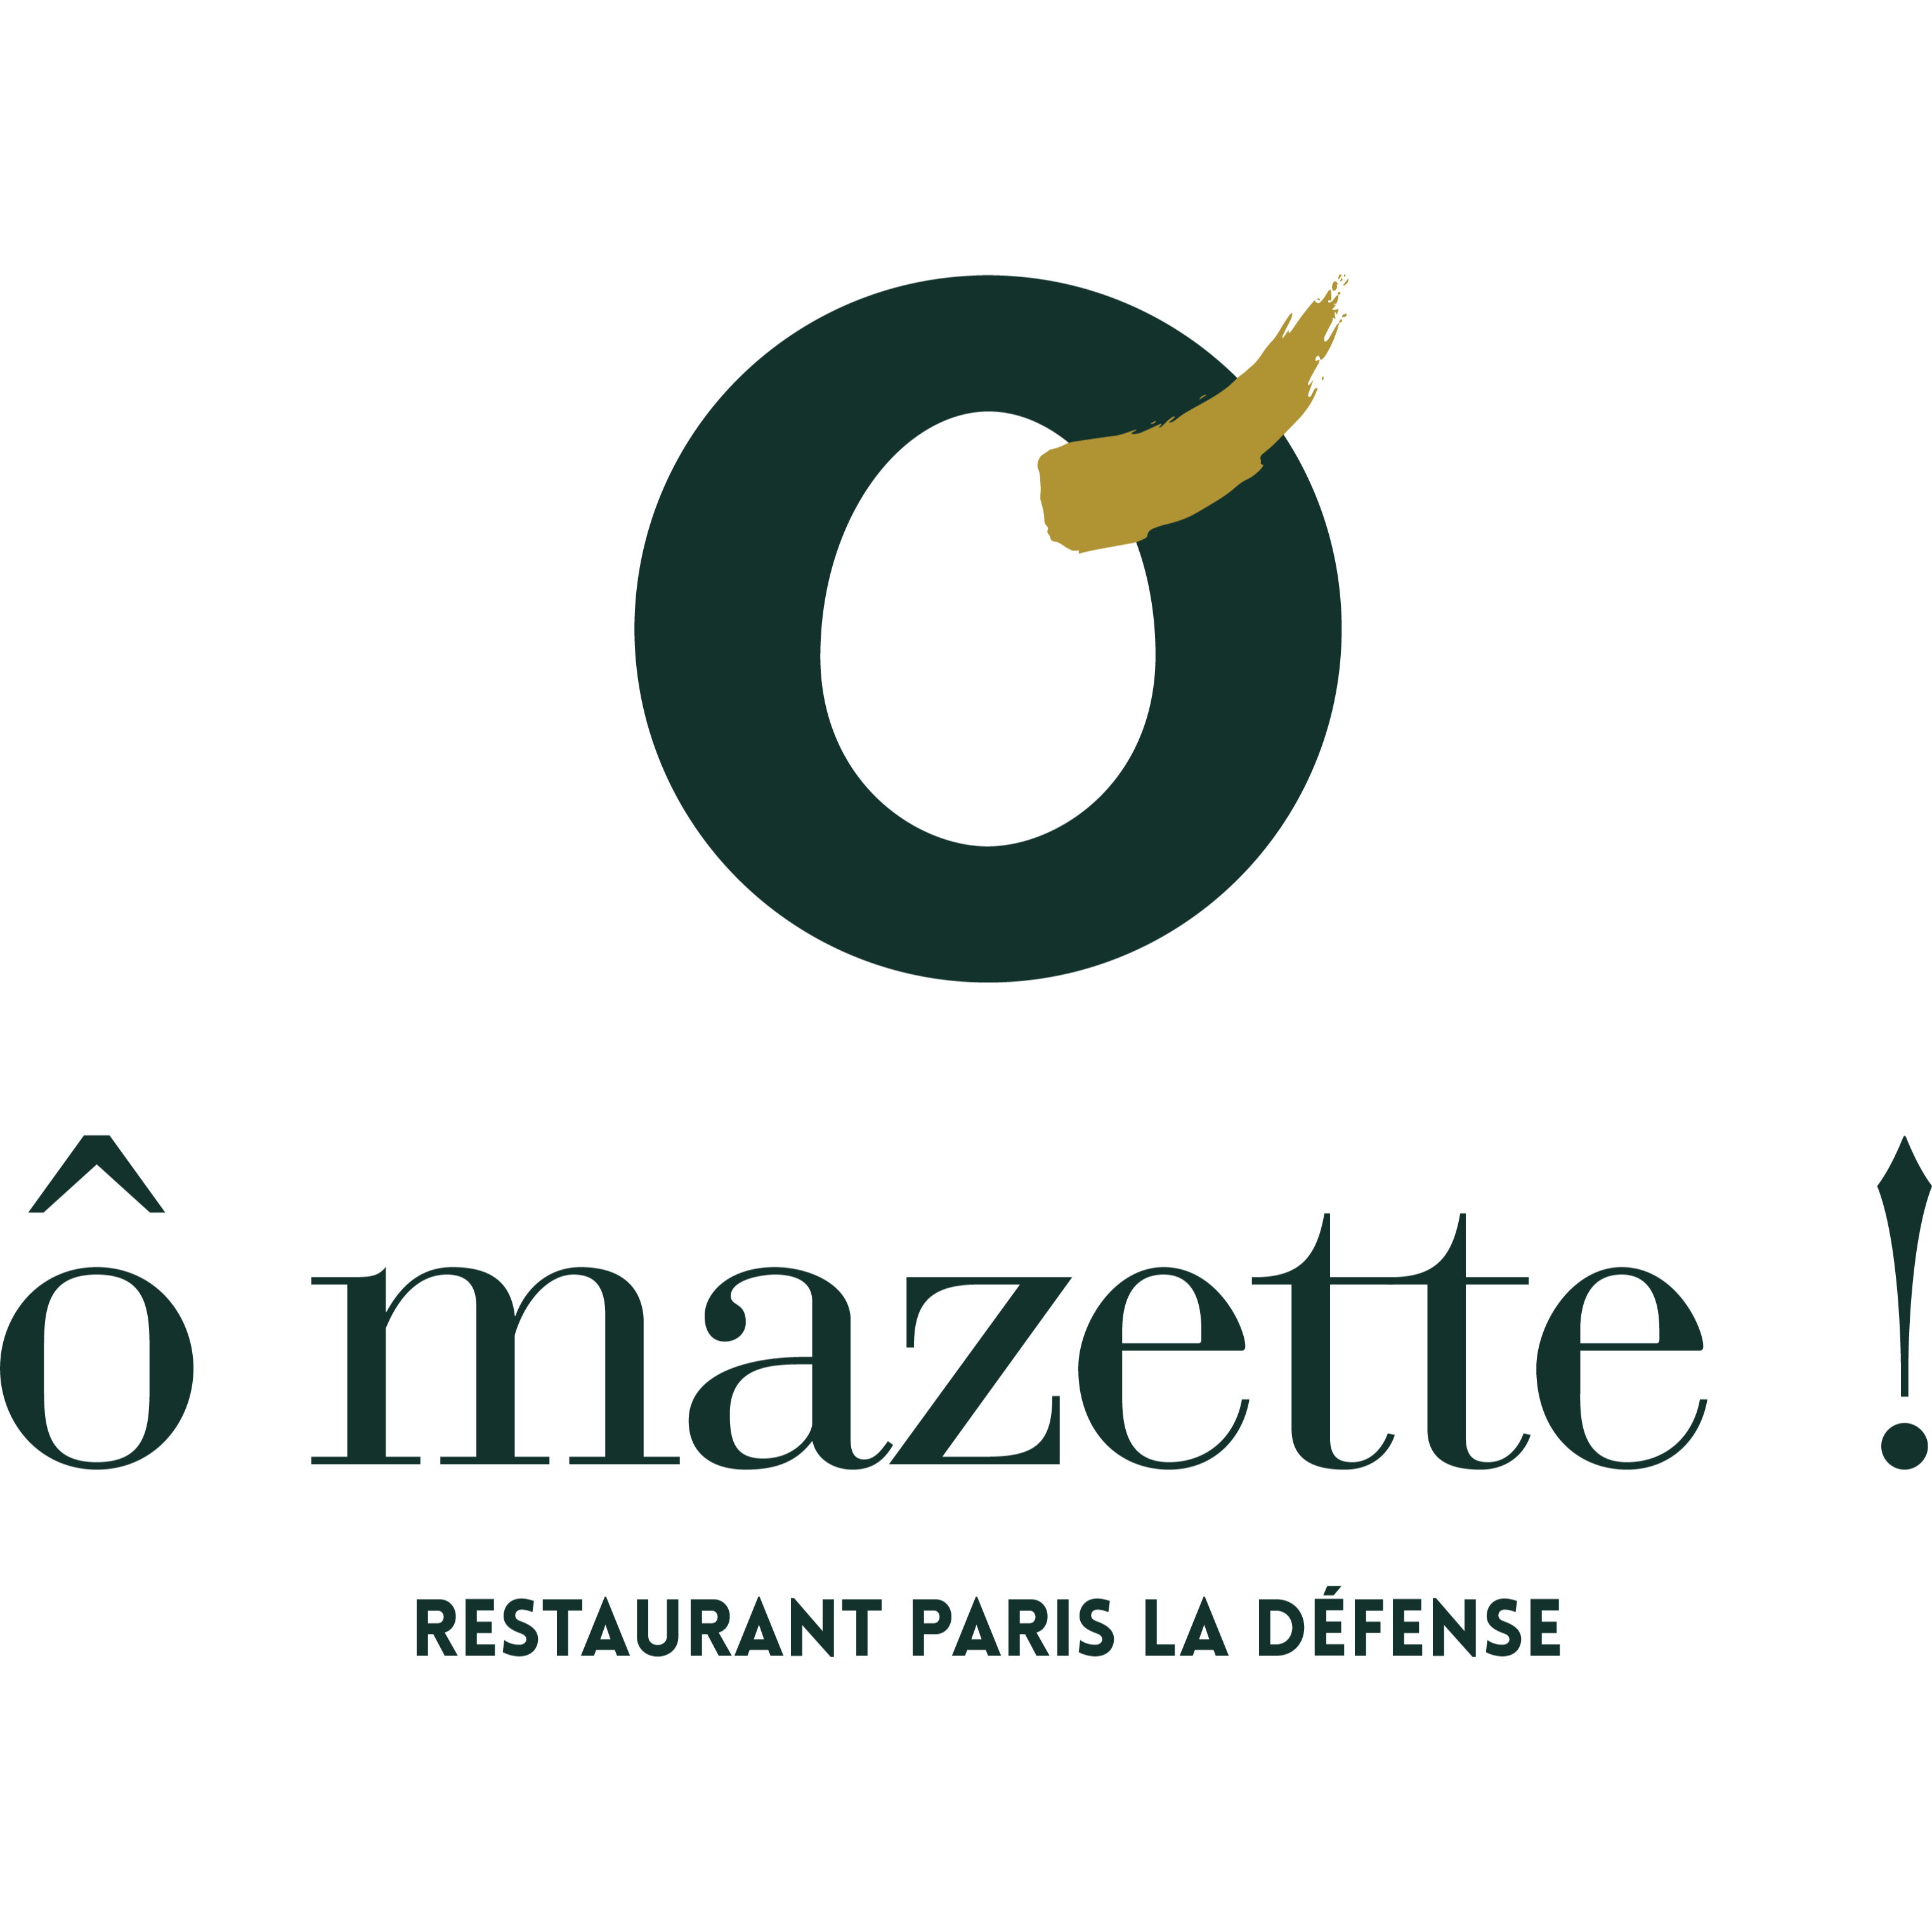 Ô Mazette! Logo